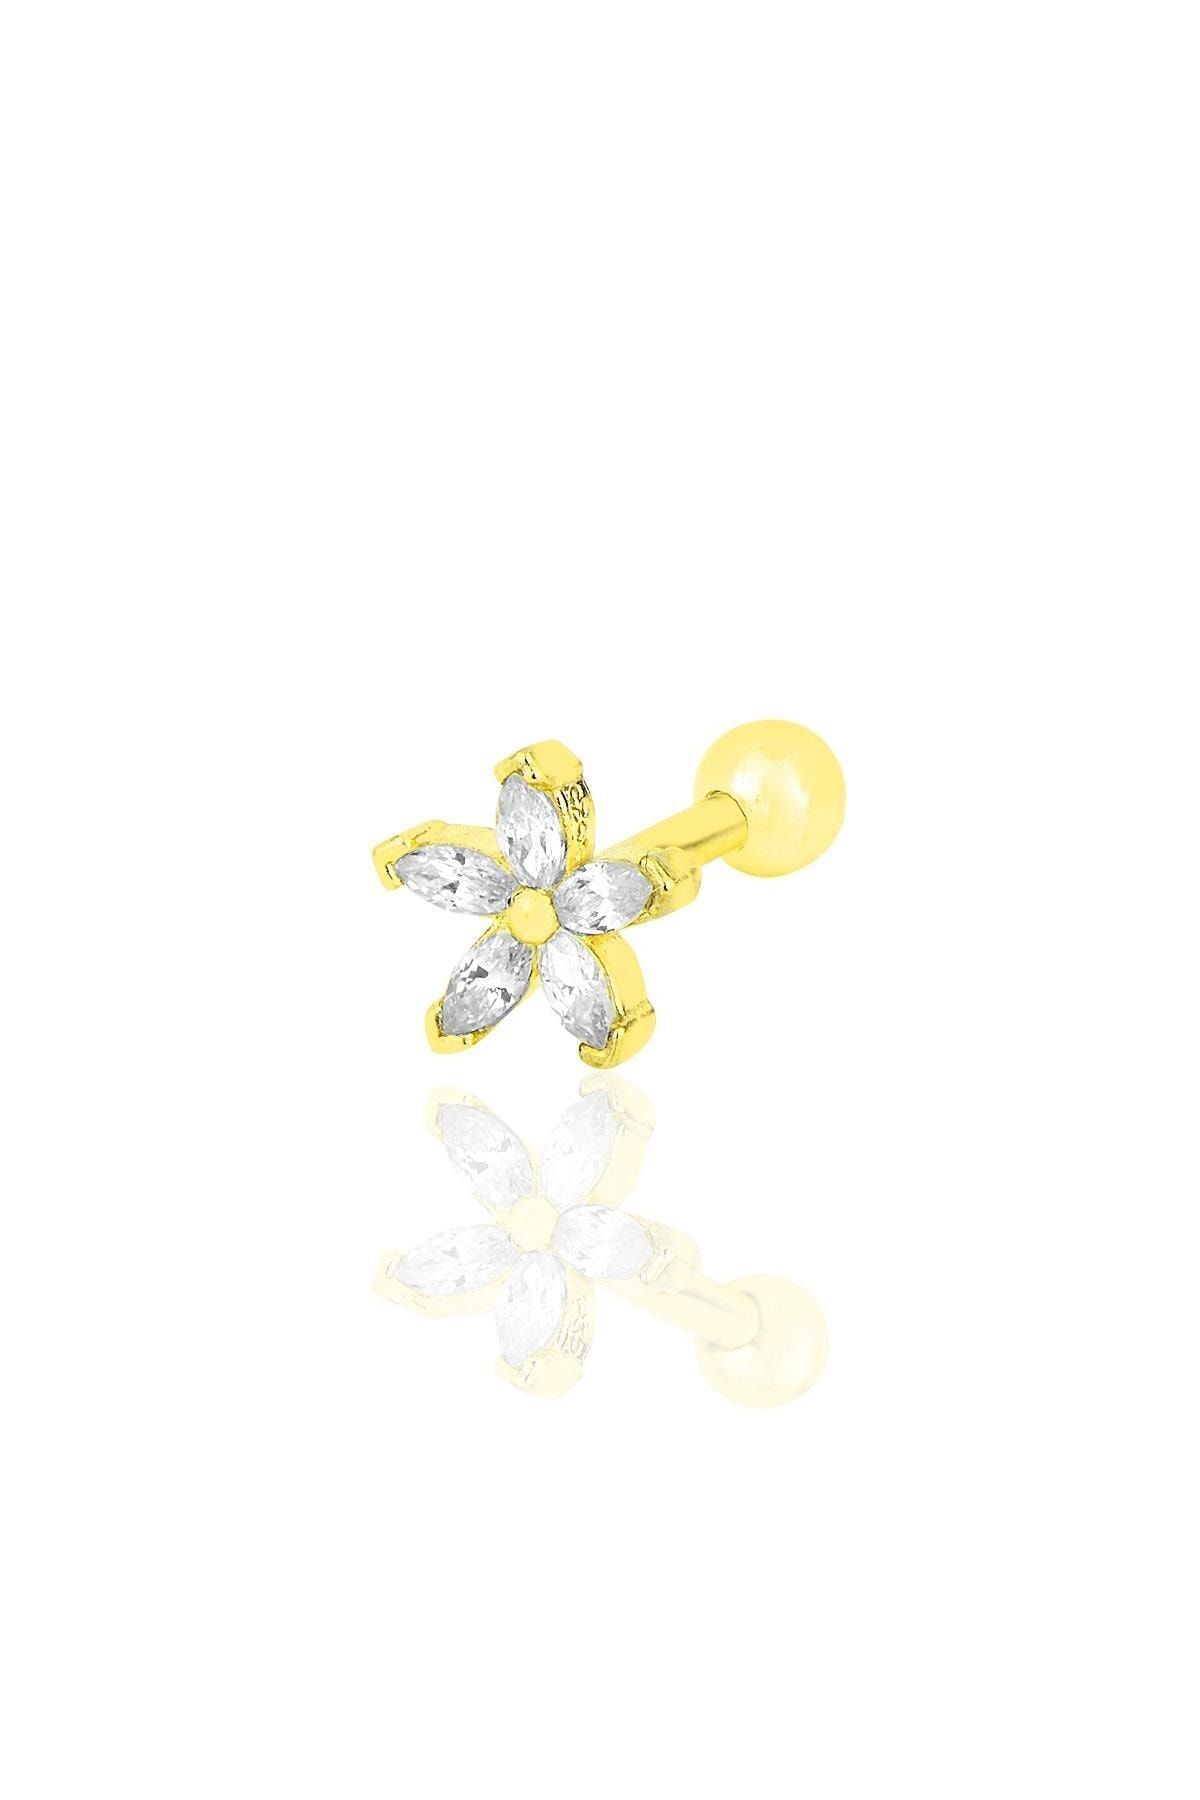 Söğütlü Silver Gümüş Altın Yaldızlı Zirkon Taşlı Çiçek Modeli Tragus Helix Piercing Küpe